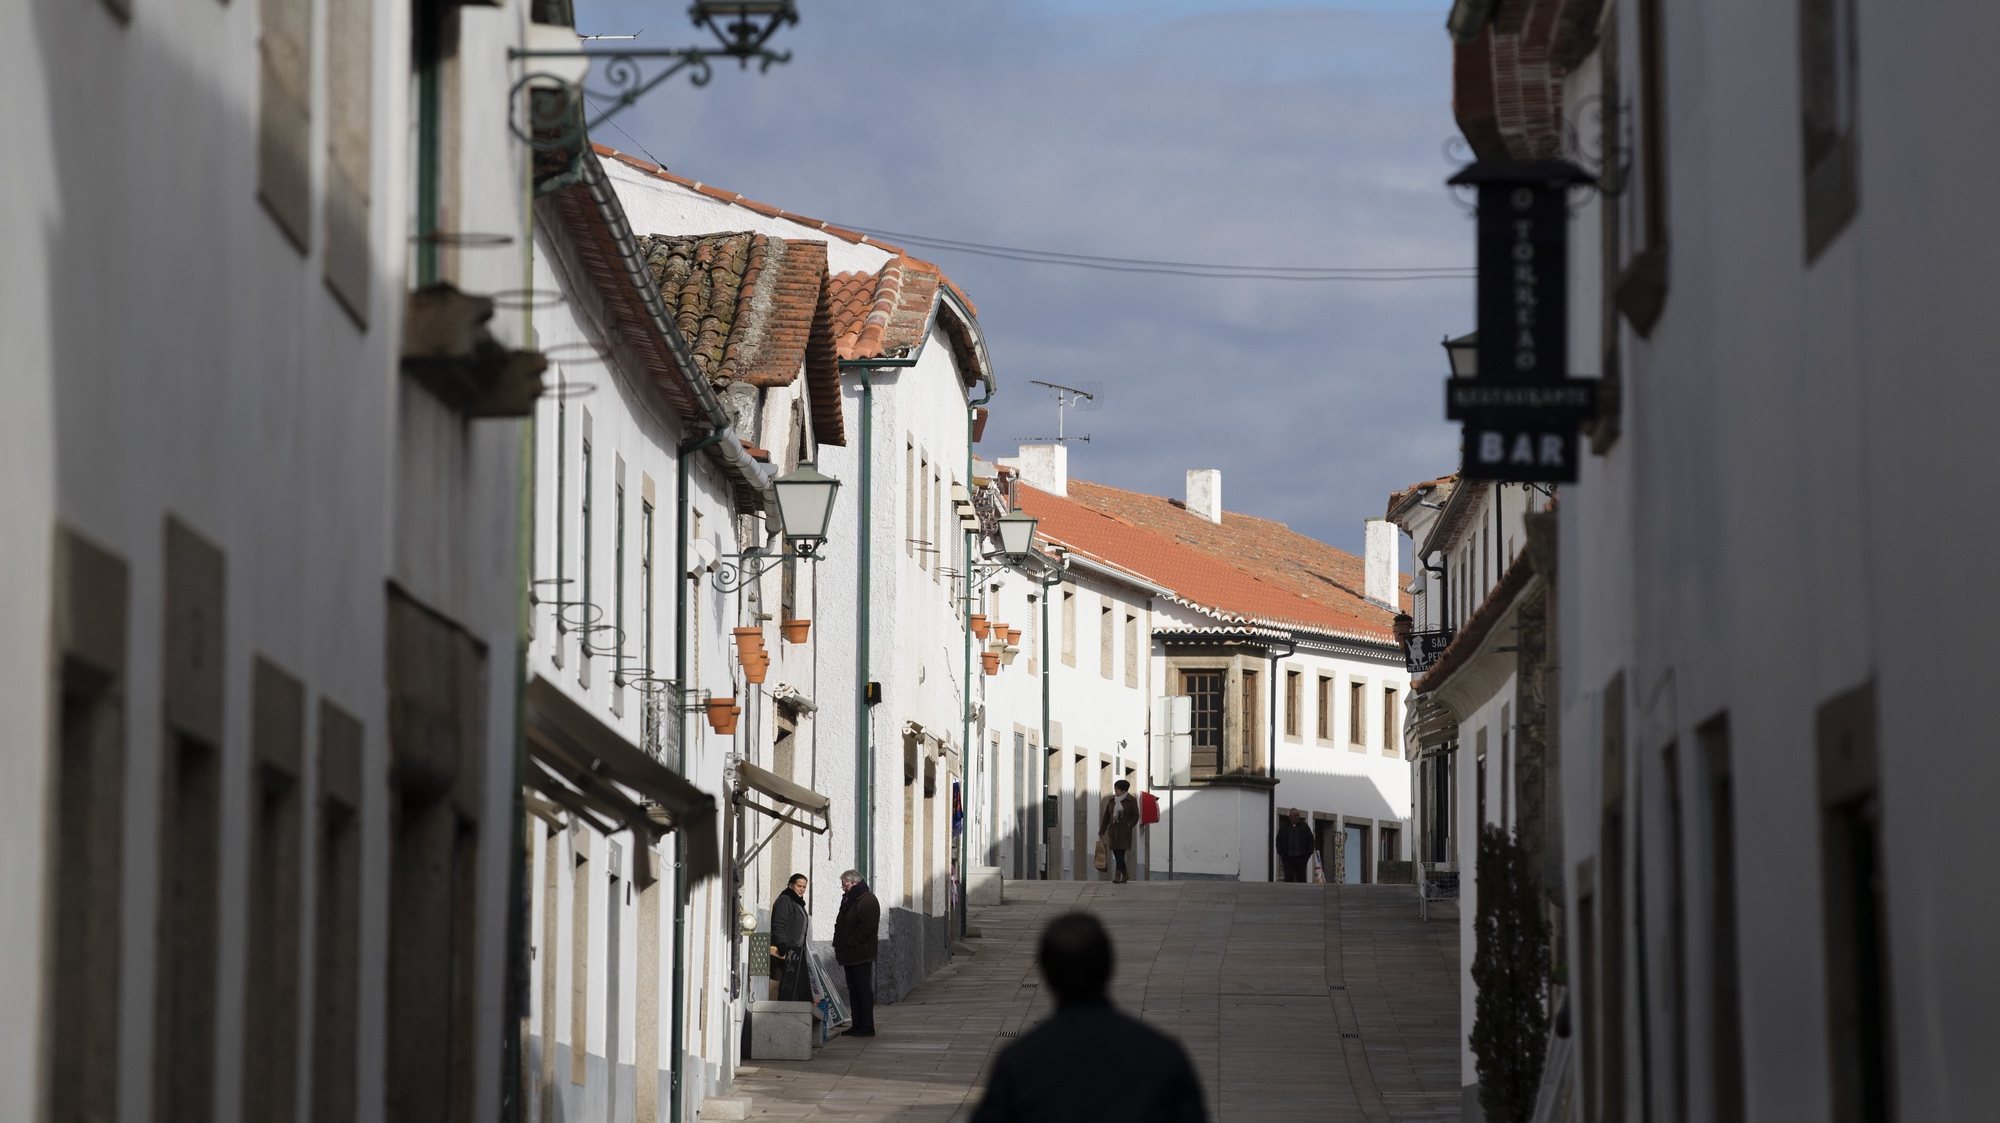 Rua de comércio no centro histórico de Miranda do Douro, 17 de janeiro de 2019. JOSÉ COELHO/LUSA